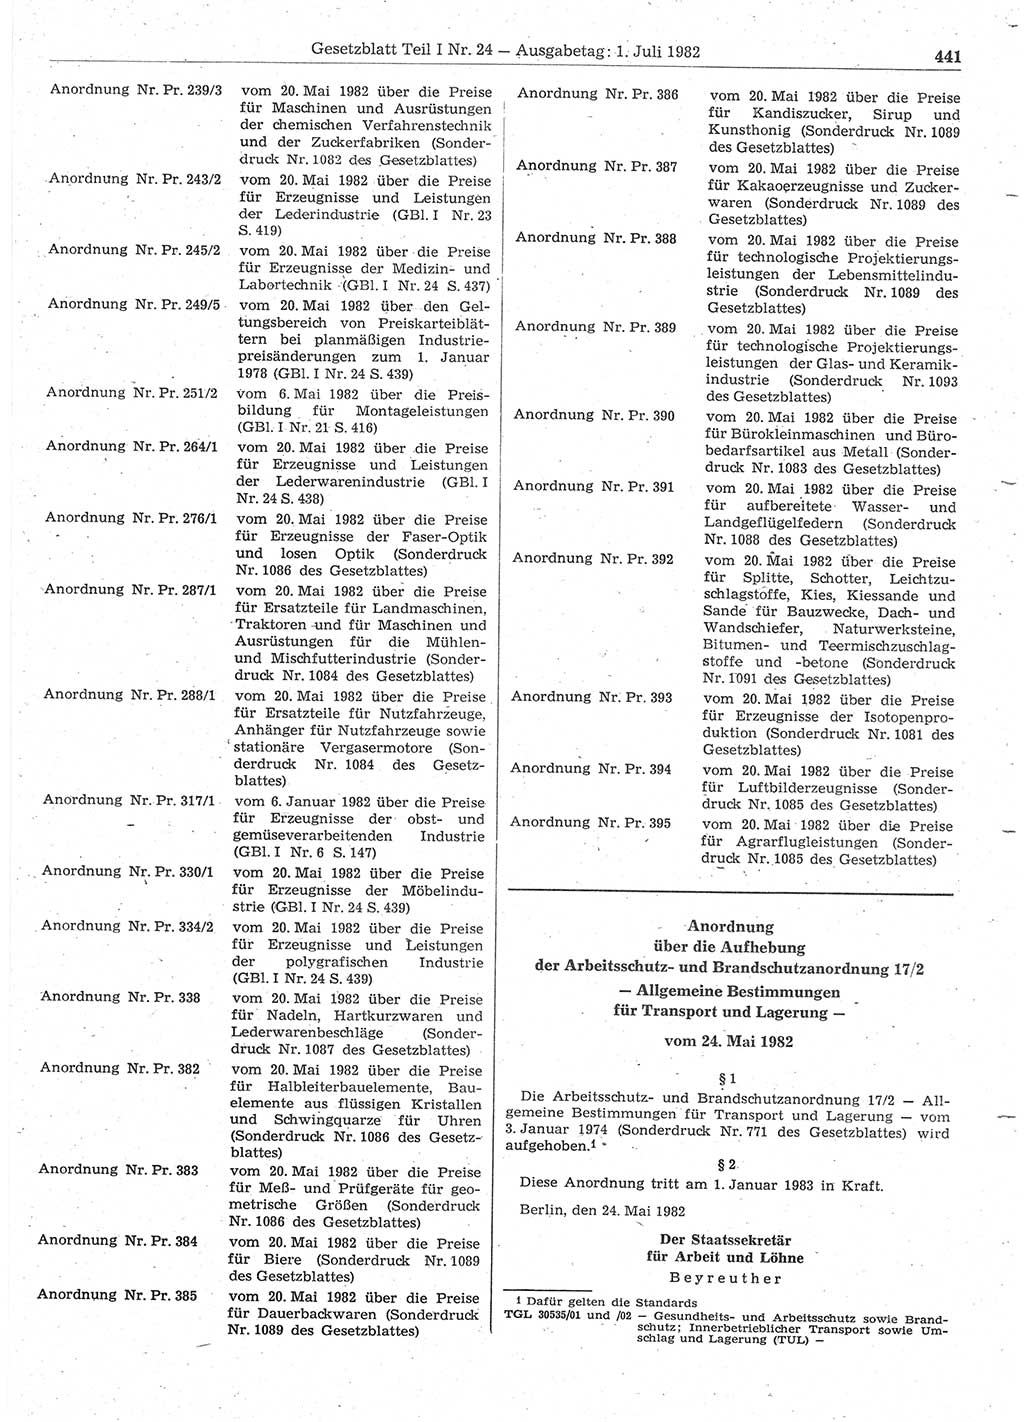 Gesetzblatt (GBl.) der Deutschen Demokratischen Republik (DDR) Teil Ⅰ 1982, Seite 441 (GBl. DDR Ⅰ 1982, S. 441)